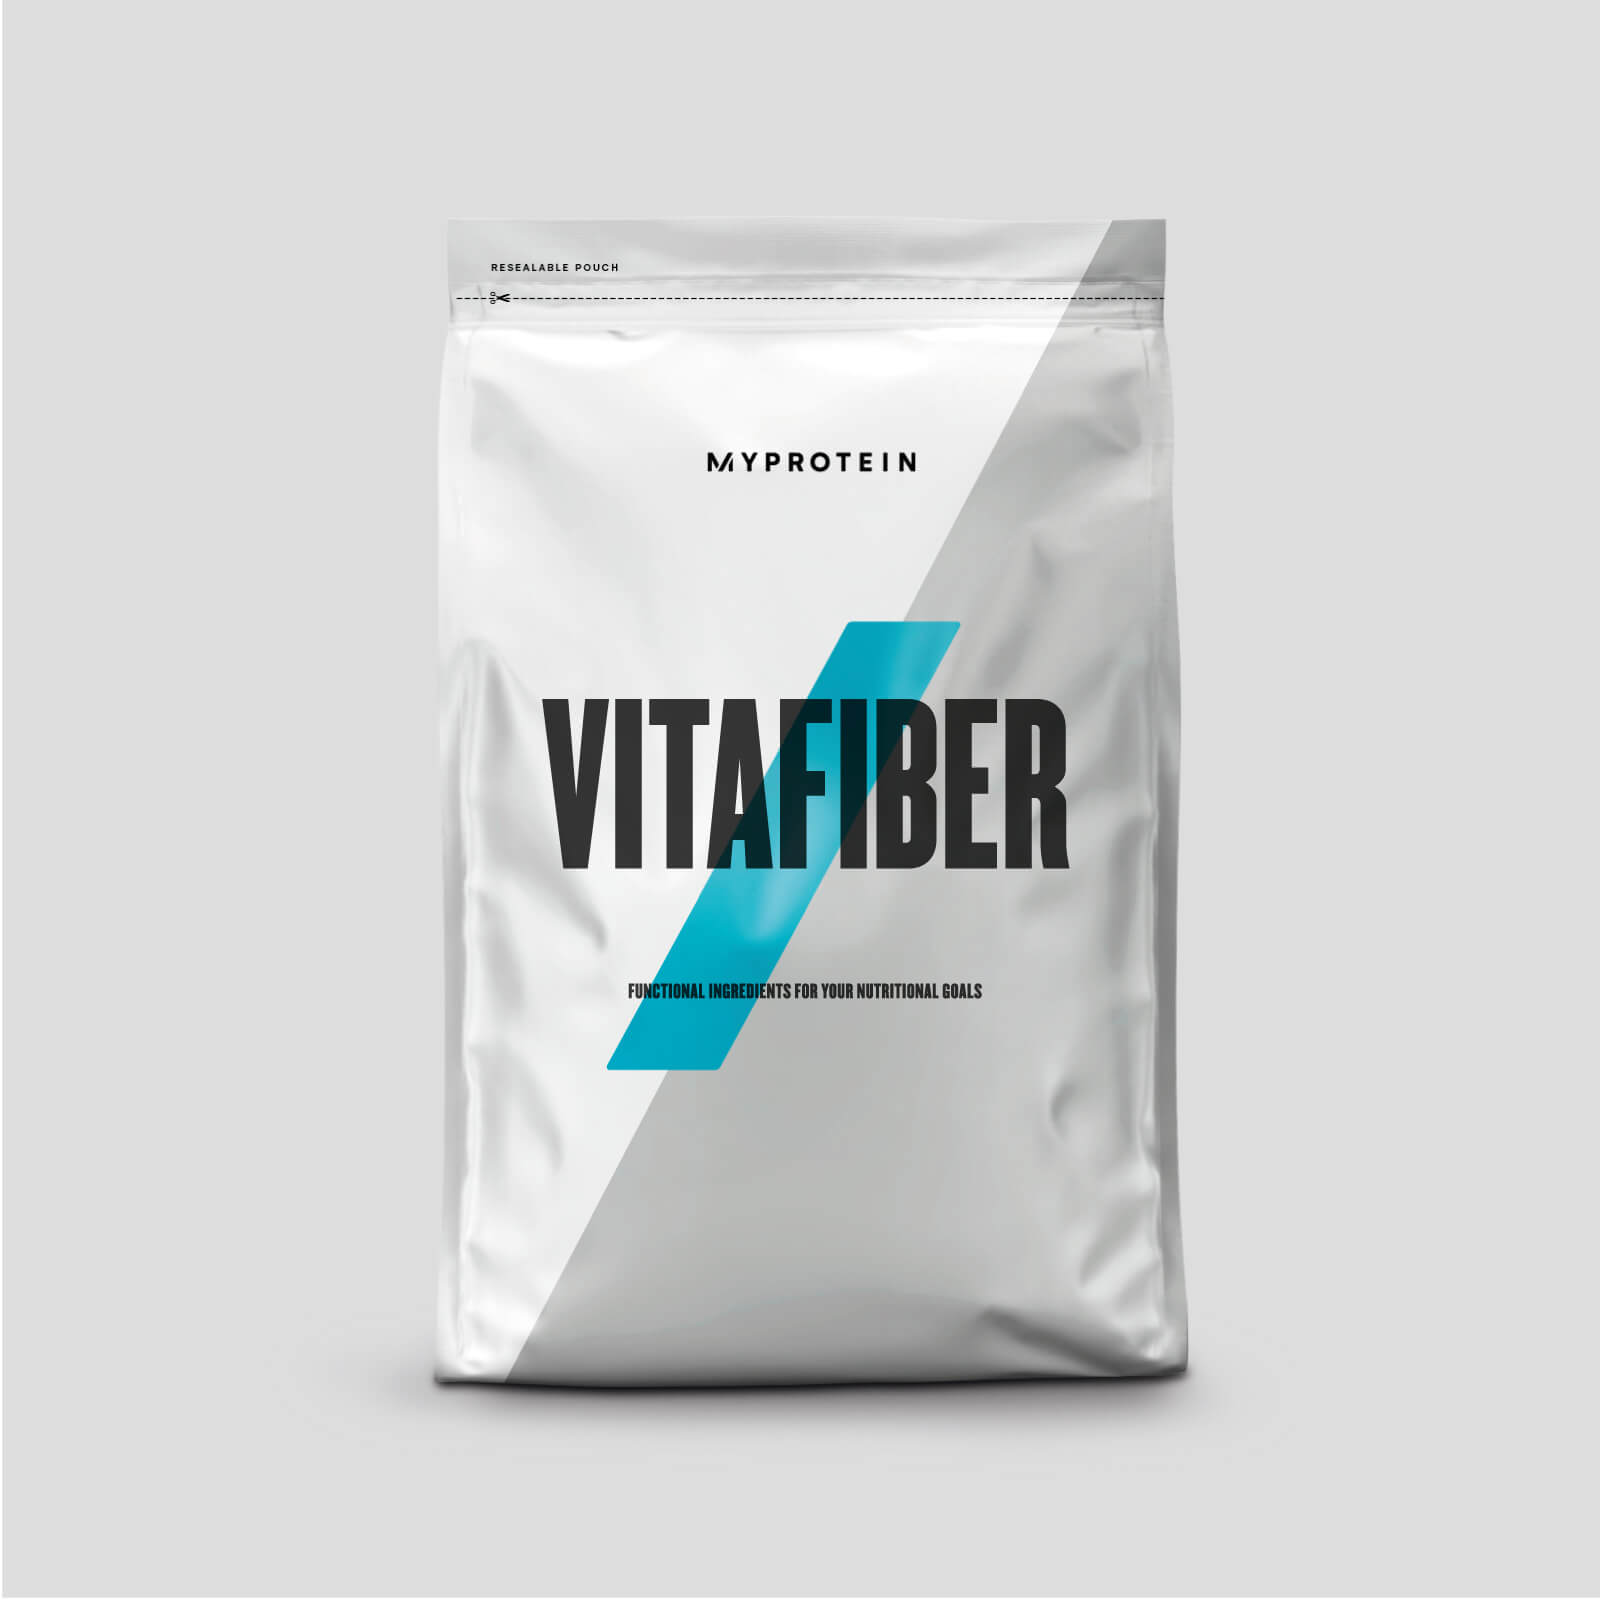 Myprotein Vitafiber™ - 500g